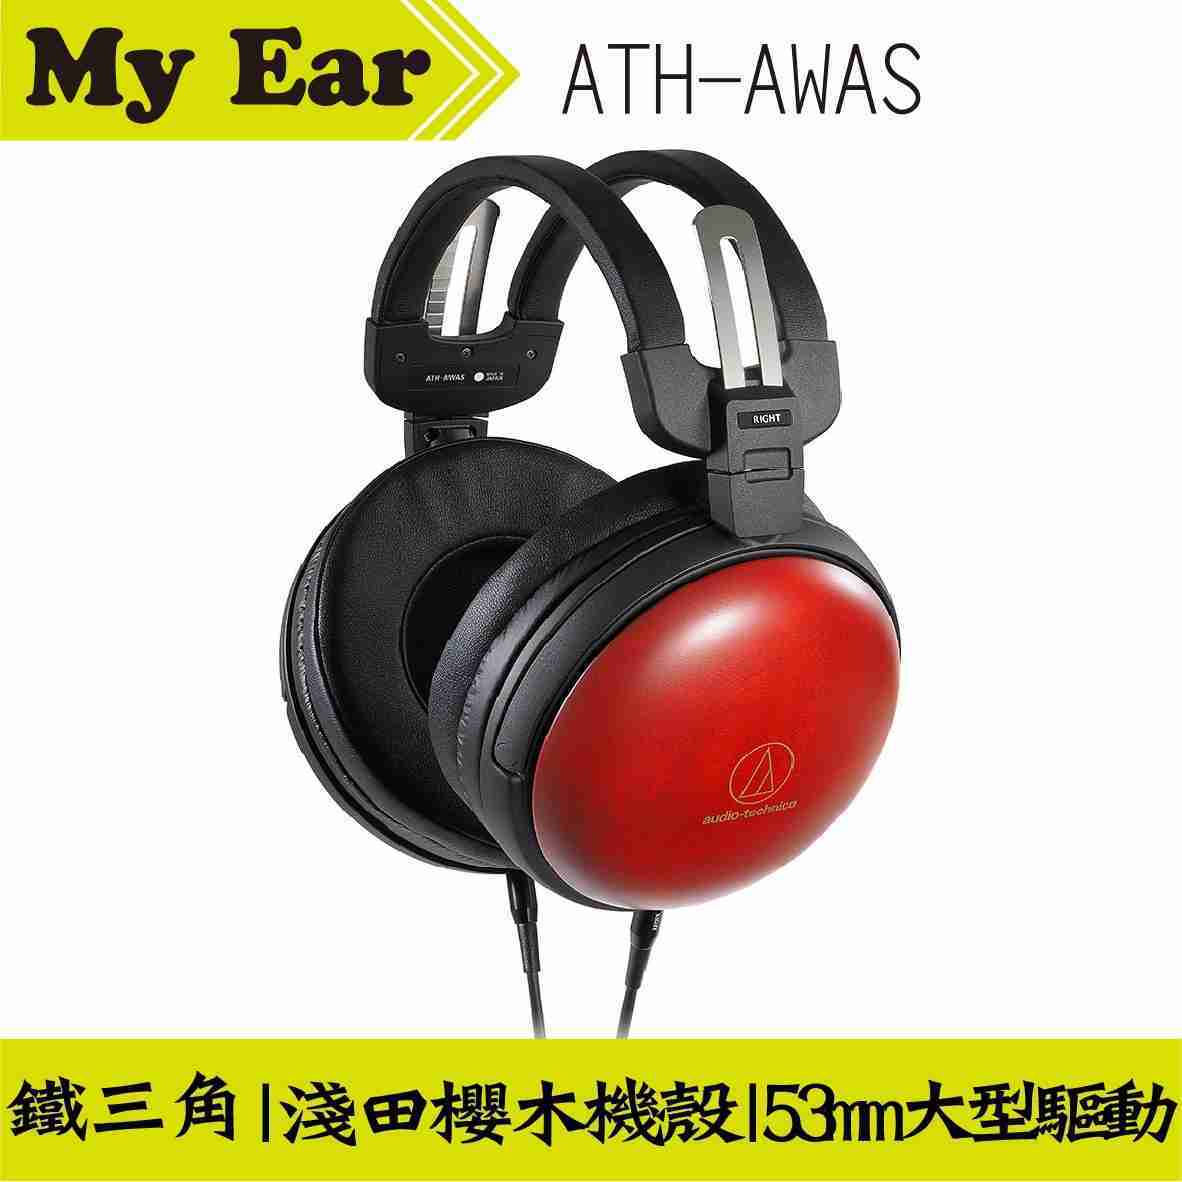 鐵三角 ATH-AWAS 木殼耳罩式耳機 北海道淺田櫻花木 日本製造 | My Ear 耳機專門店